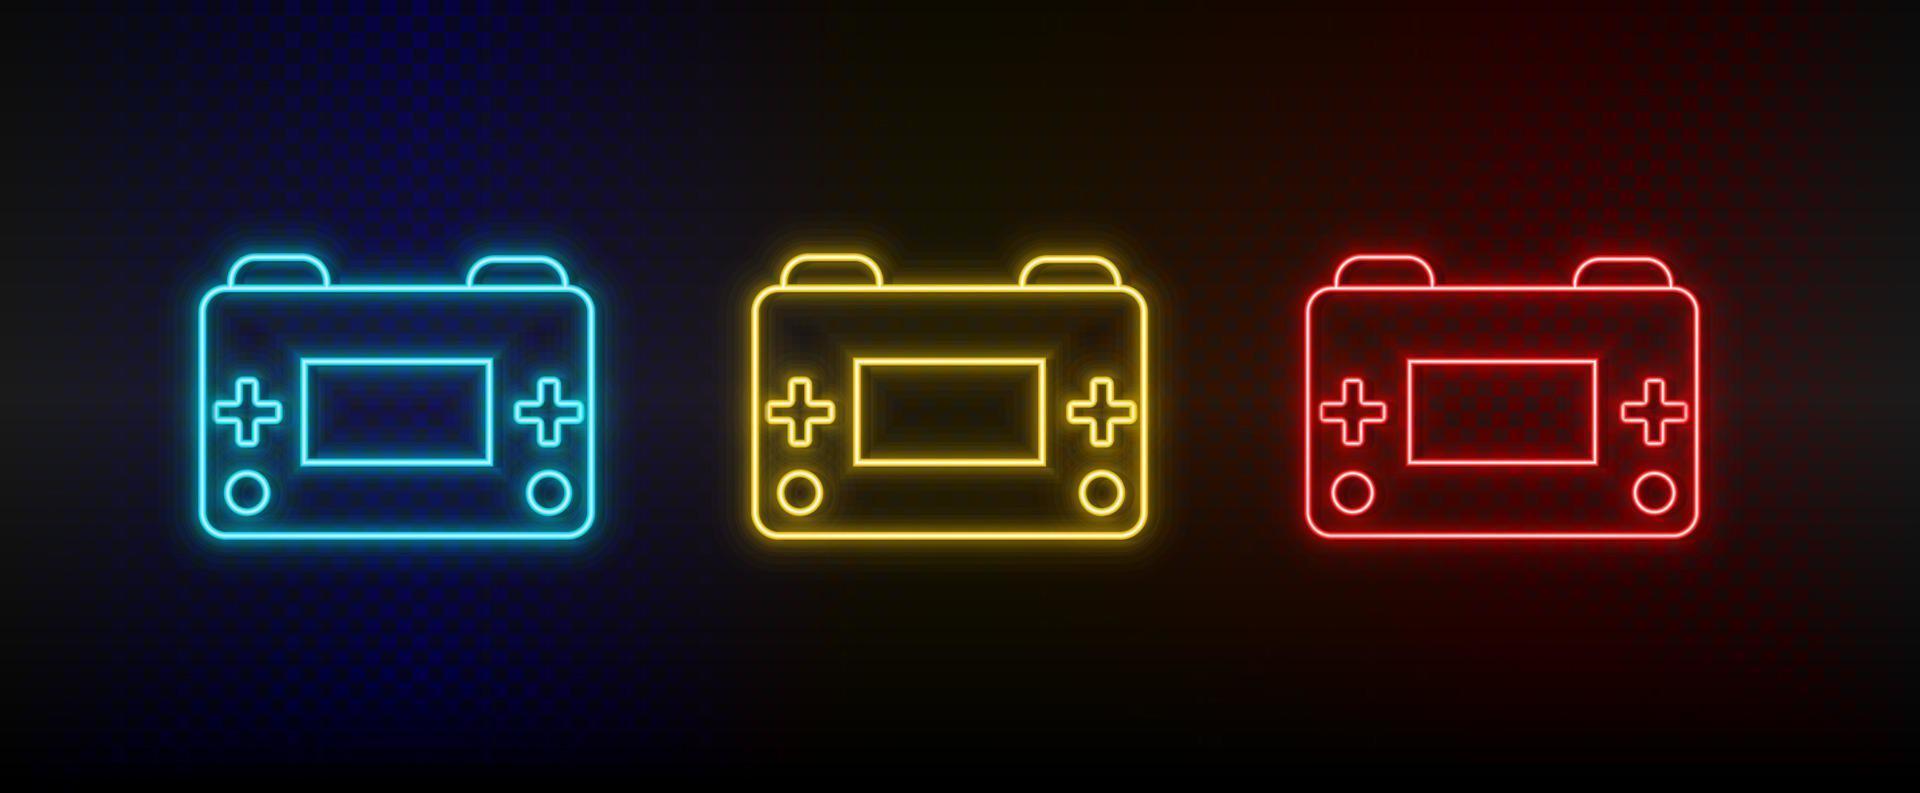 icônes au néon. console de jeu d'arcade rétro. ensemble d'icônes vectorielles néon rouge, bleu, jaune sur fond sombre vecteur